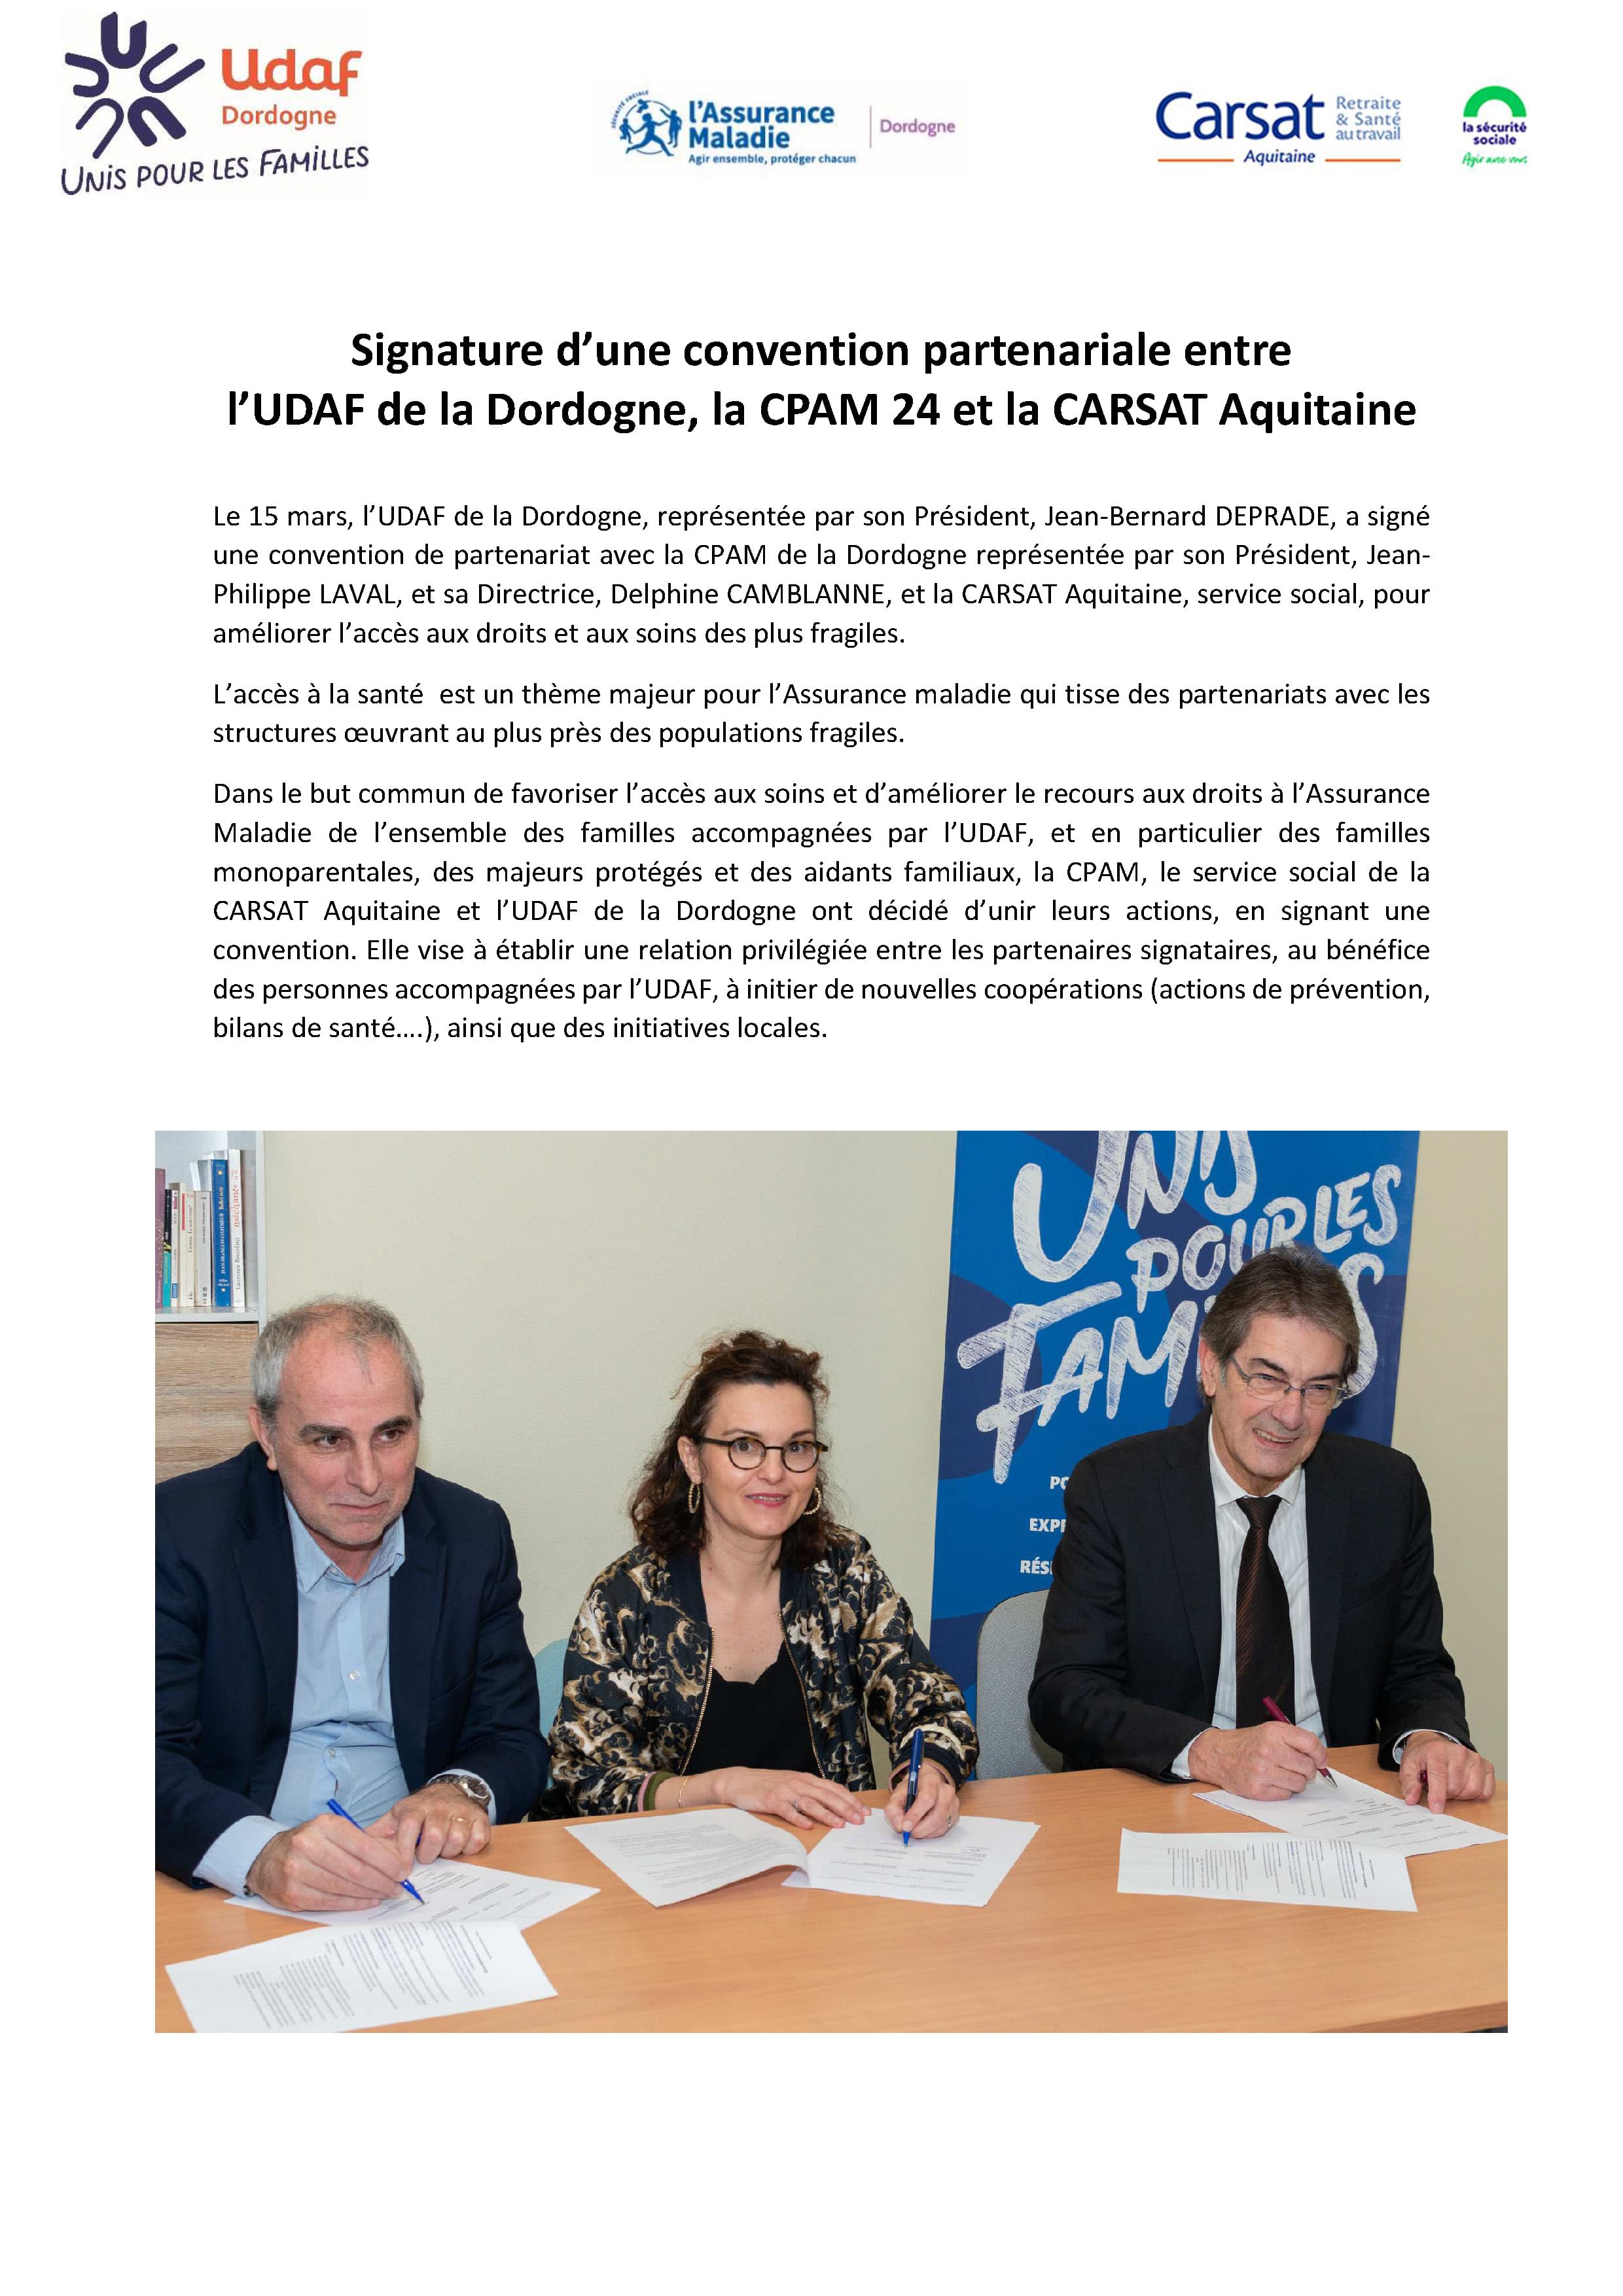 Signature d’une convention partenariale entre l’UDAF de la Dordogne, la CPAM 24 et la CARSAT Aquitaine